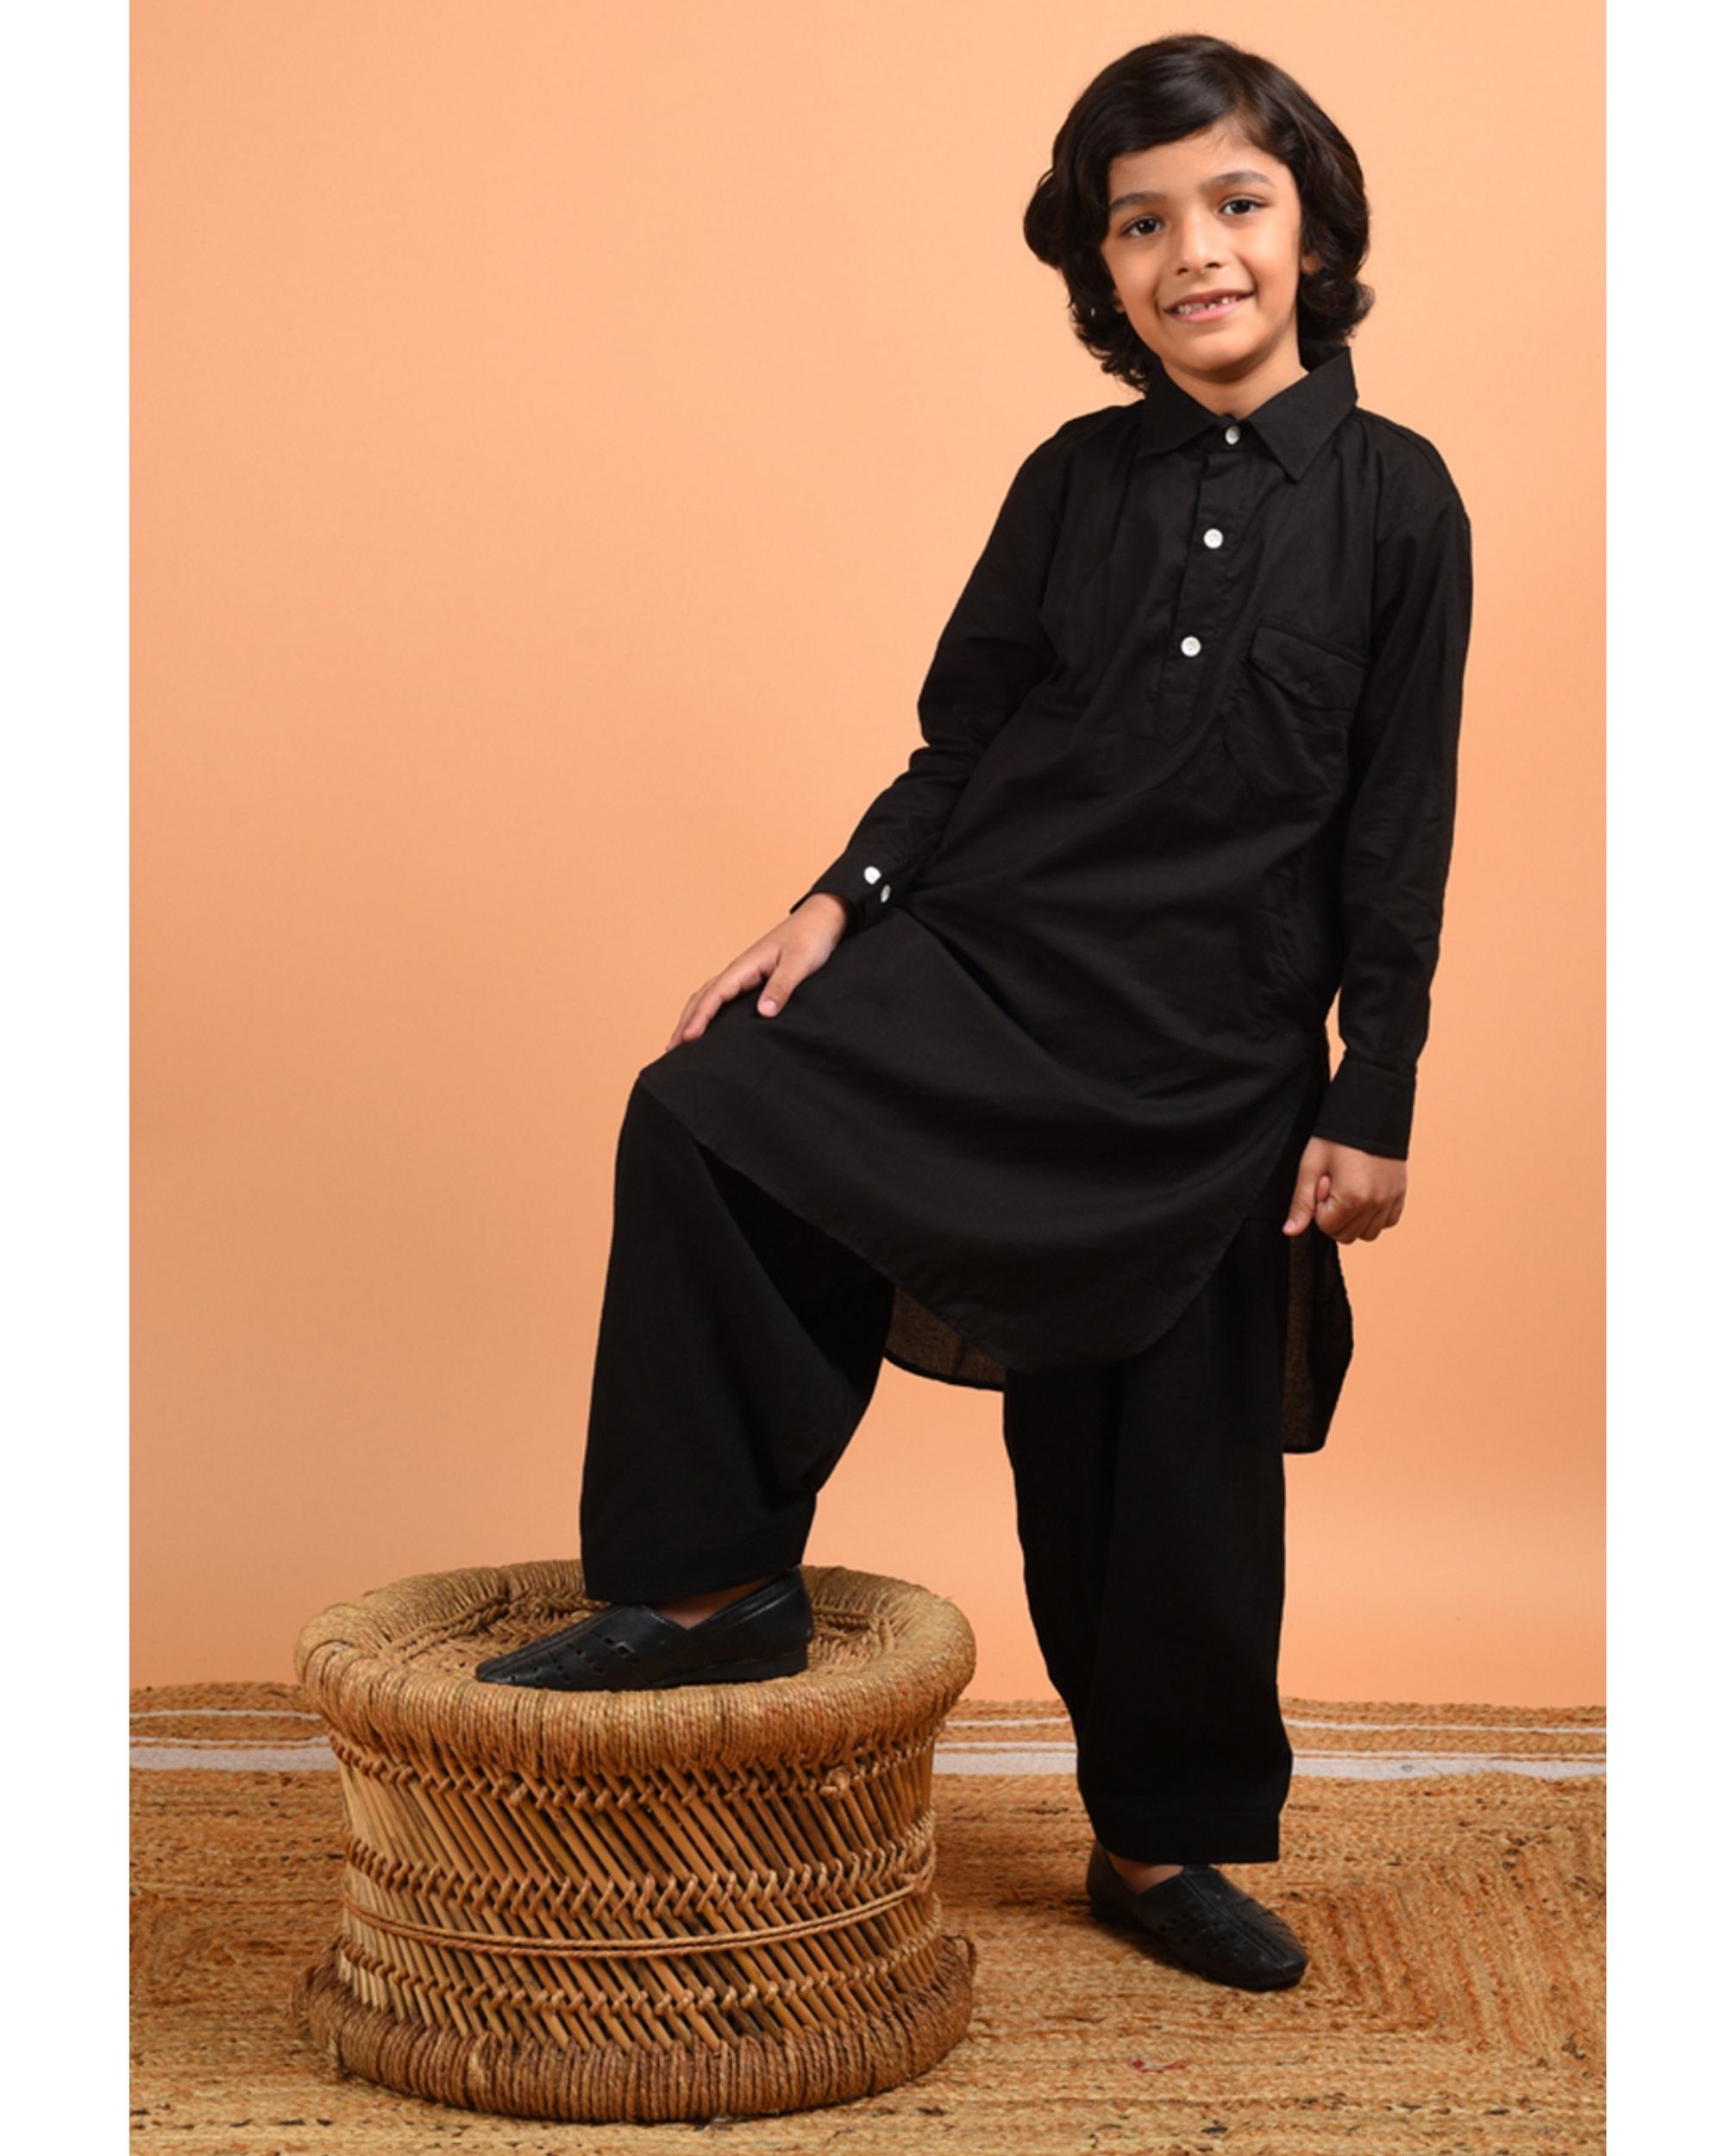 Black pathani kurta-pyjama set - set of two